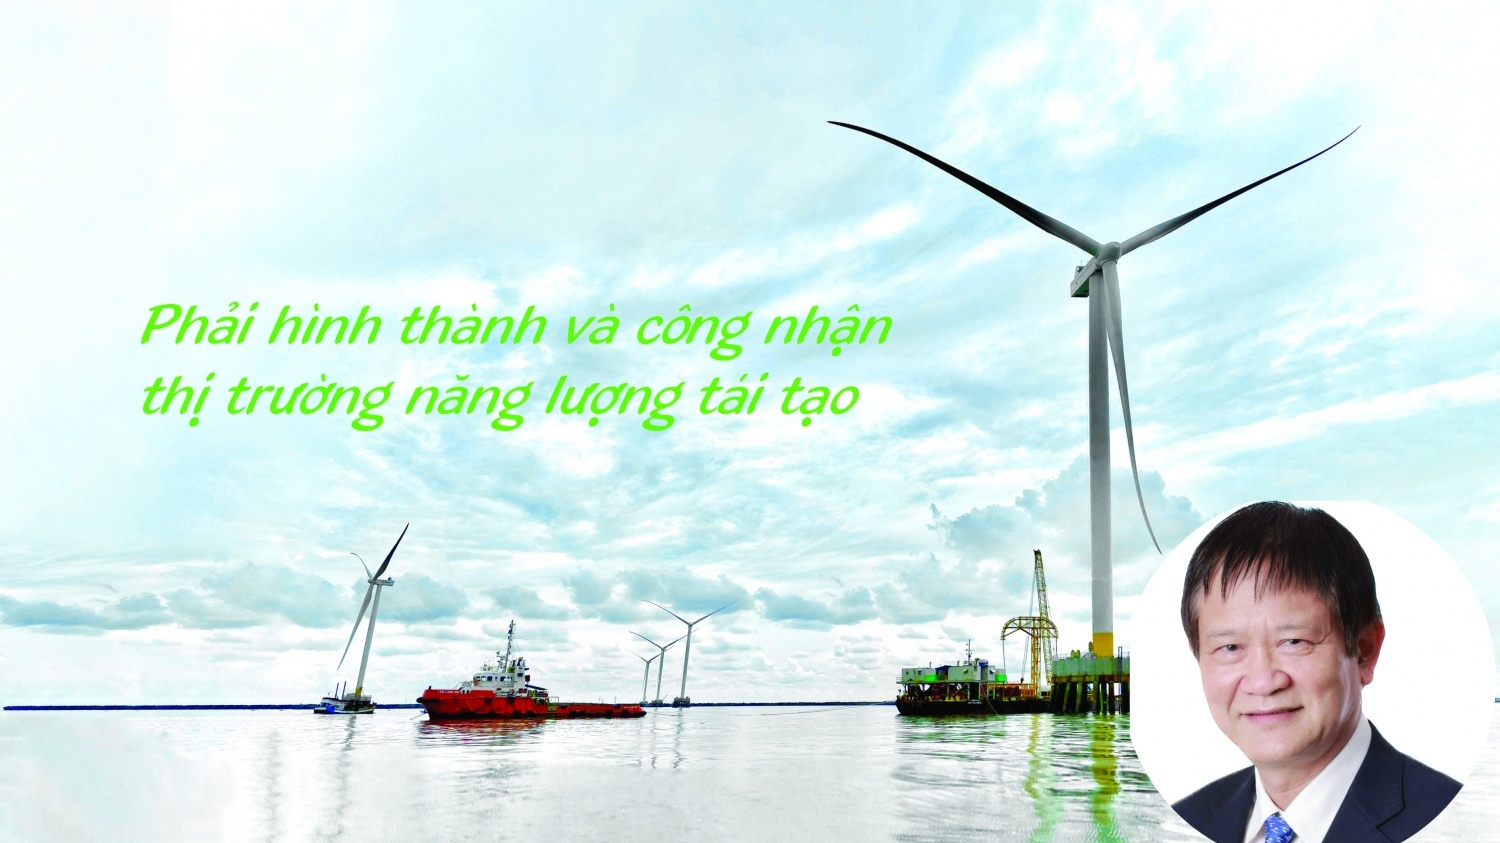 TS. Hoàng Xuân Quốc: Cần thiết xây dựng và ban hành luật năng lượng tái tạo